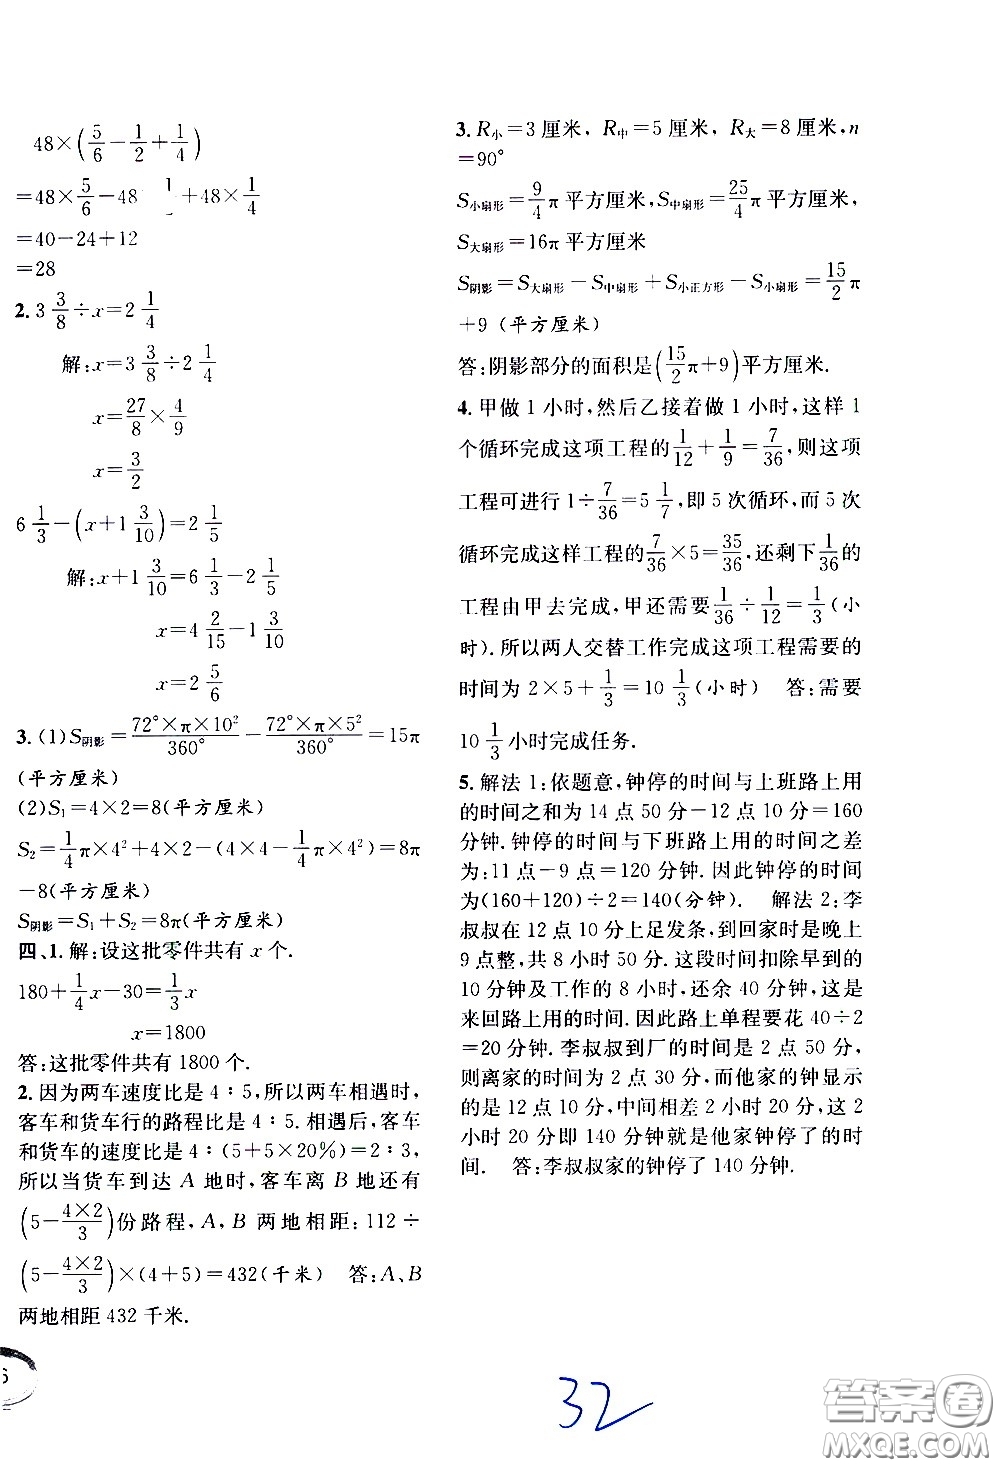 上海世界图书出版社公司2021年学霸作业数学五年级下册上海版答案